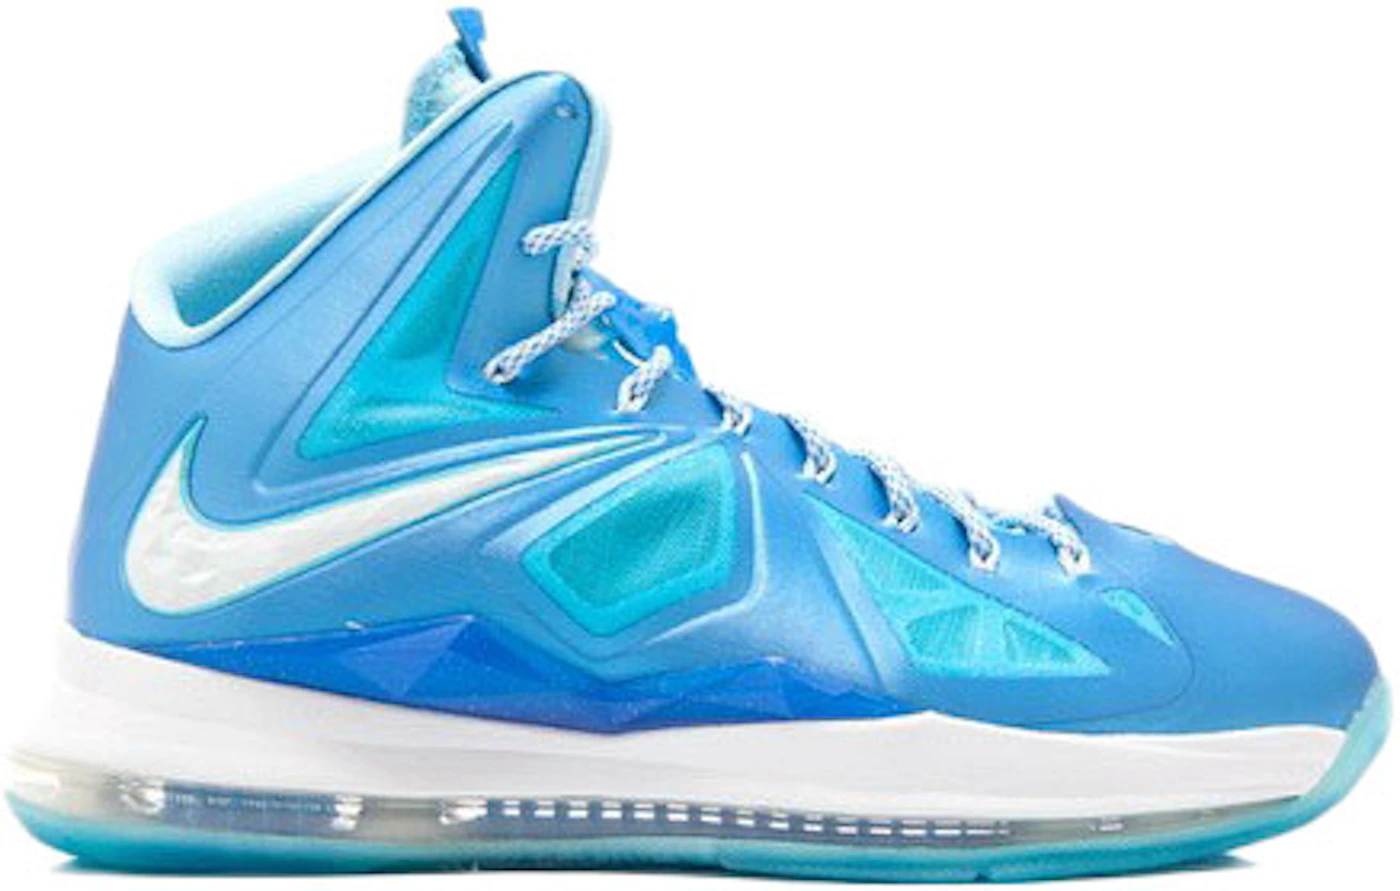 Nike LeBron X Sport Pack Blue Diamond Men's - 542244-400/598360-400 - US